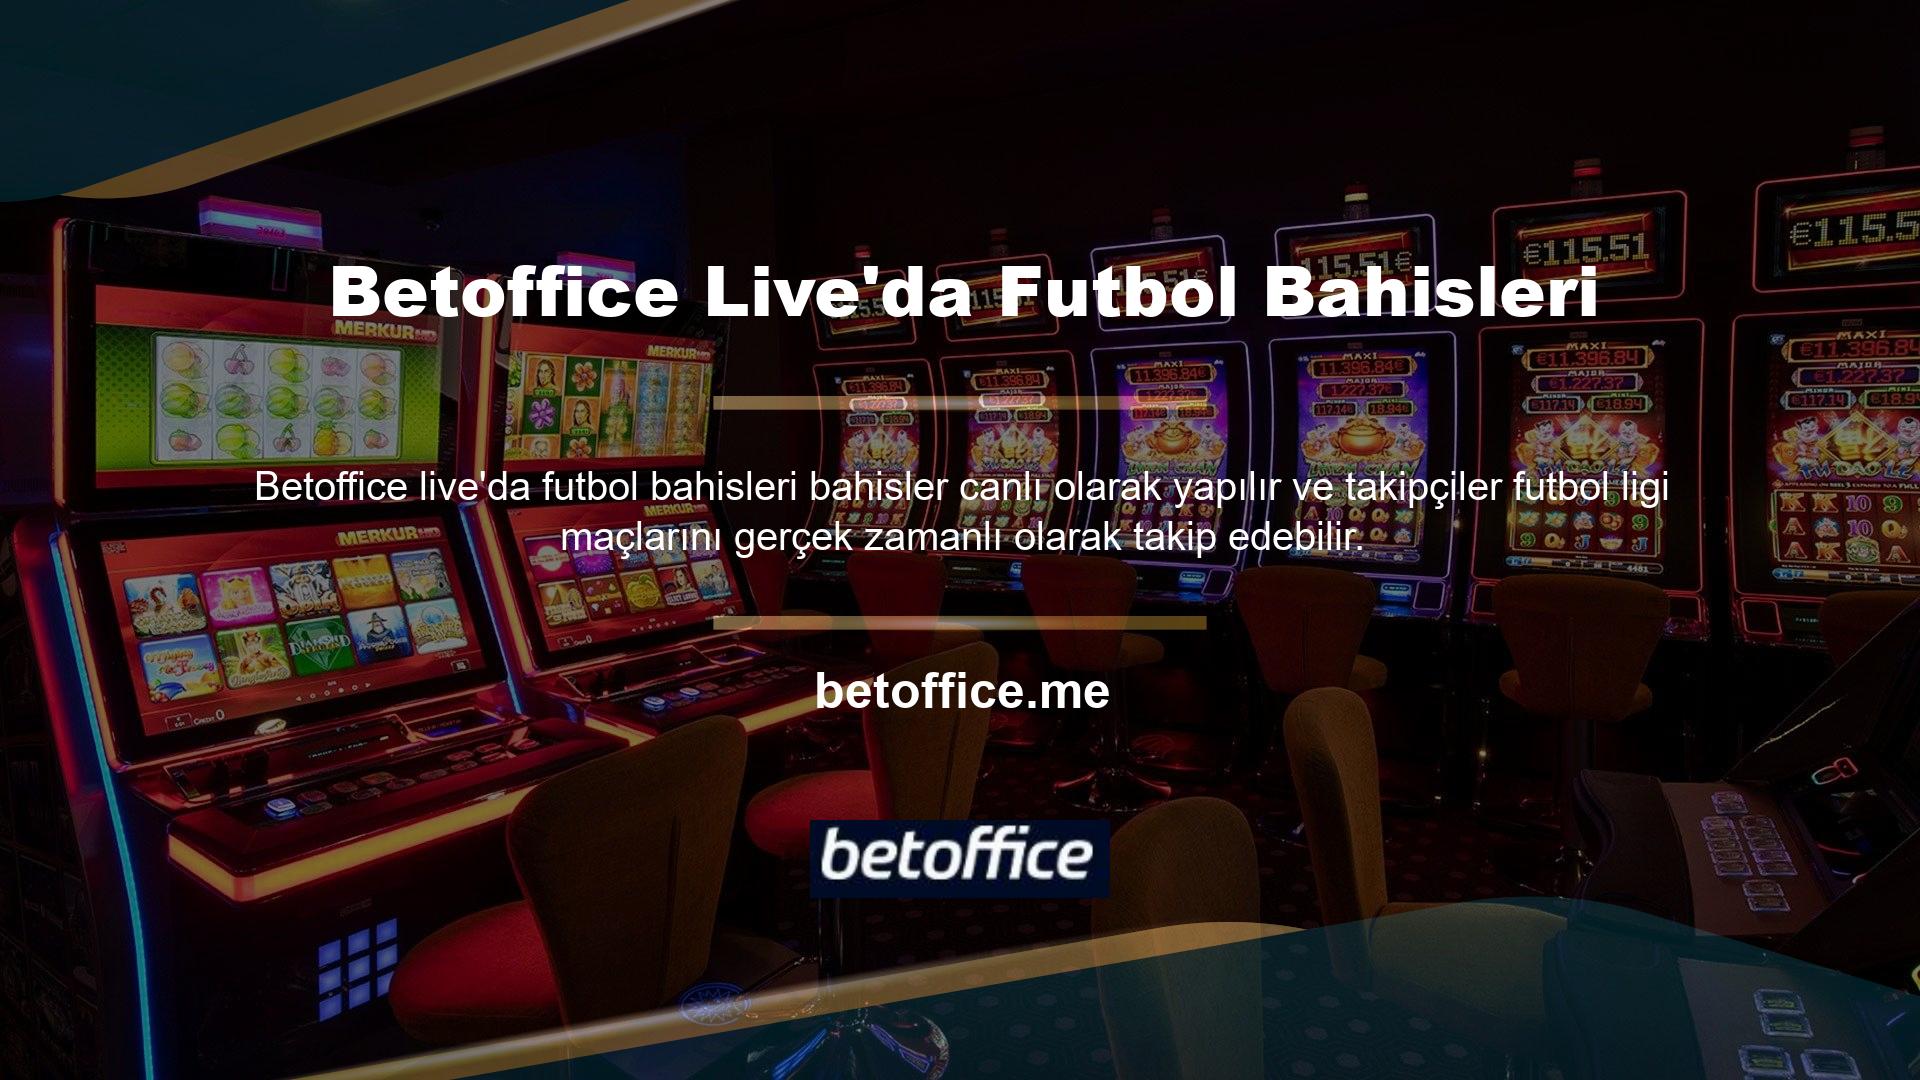 Günümüzün en iyi futbol maçına ilişkin bahis seçeneklerini Betoffice canlı bahis sitesinin çevrimiçi bahis bölümünde bulabilirsiniz